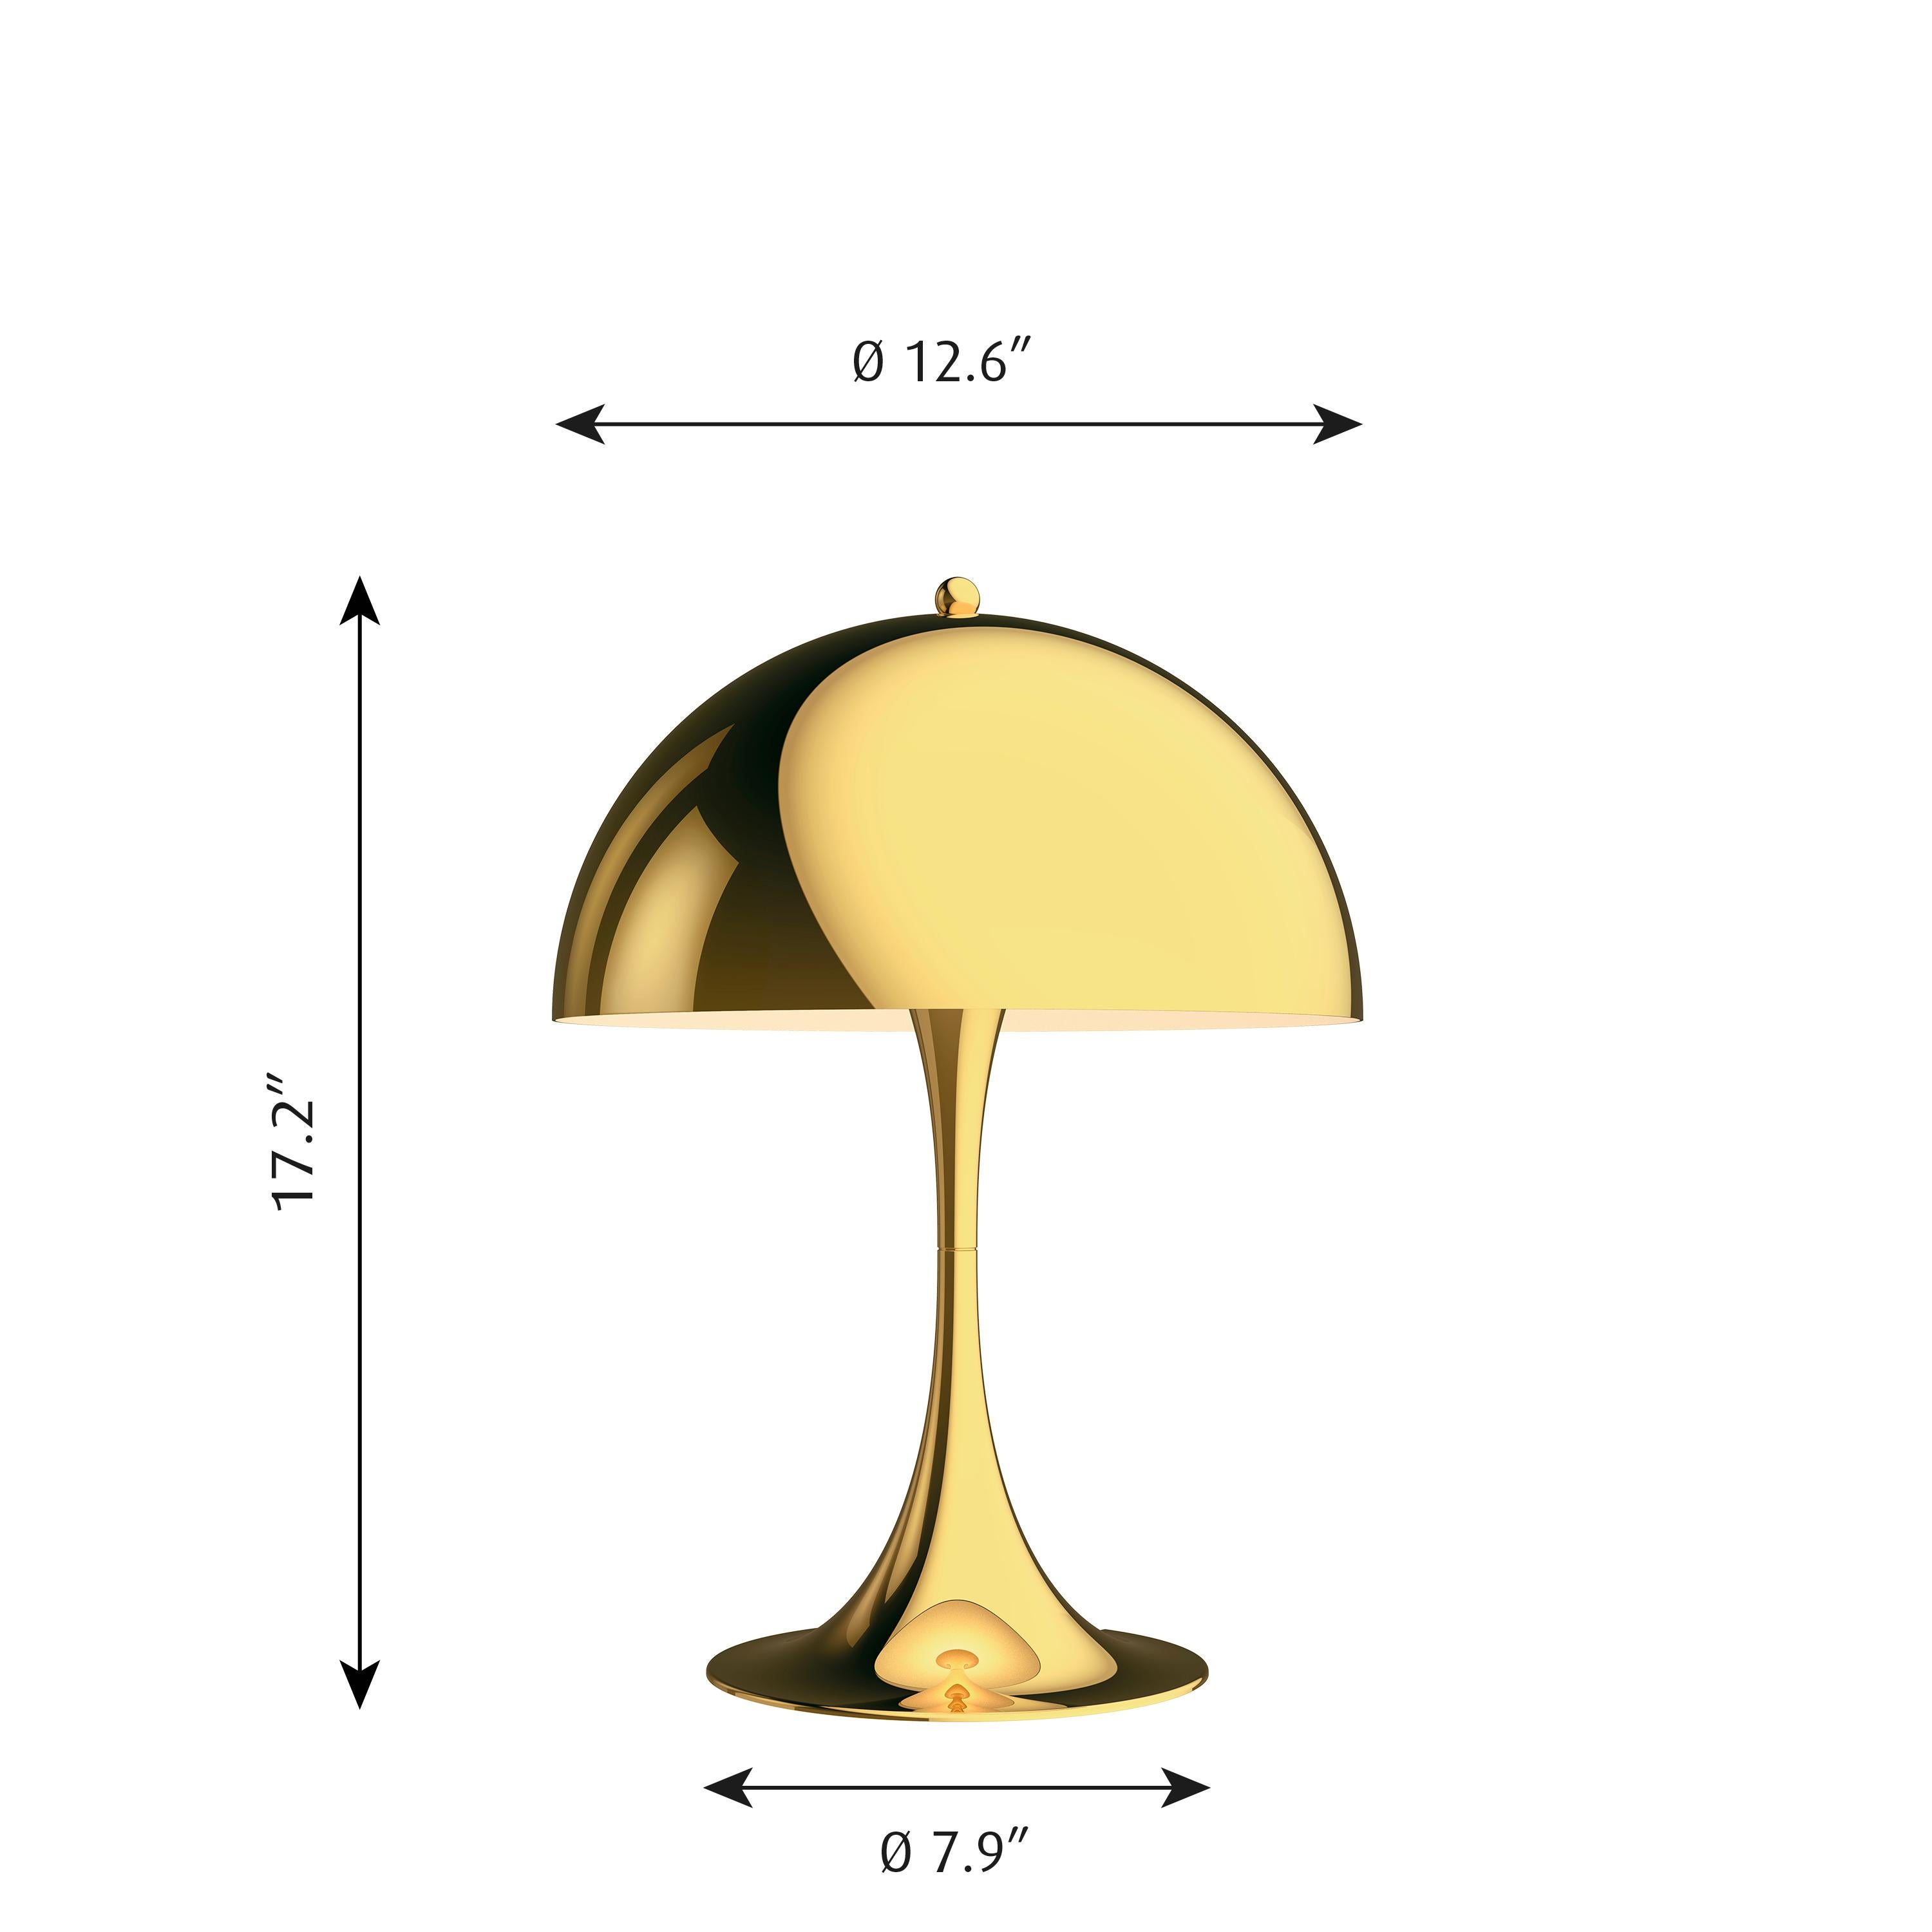 Lampe de table 'Panthella 320' de Verner Panton en laiton pour Louis Poulsen. La lampe de table Panthella 320 de taille moyenne utilise les dessins originaux de Verner Panton pour produire une lampe de forme organique avec un abat-jour en métal. La